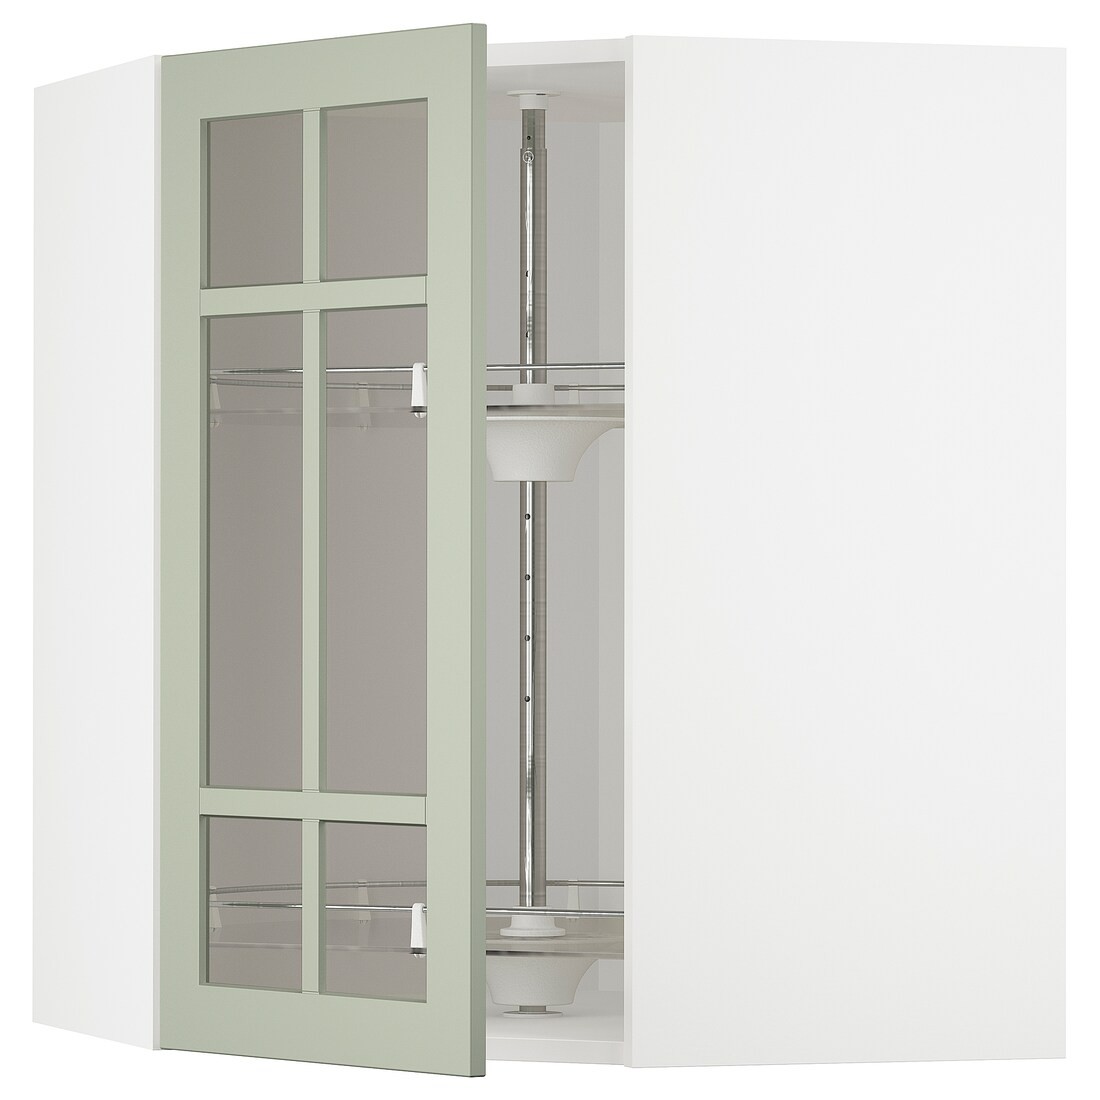 METOD МЕТОД Кутова настінна шафа з каруселлю / скляні двері, білий / Stensund світло-зелений, 68x80 см